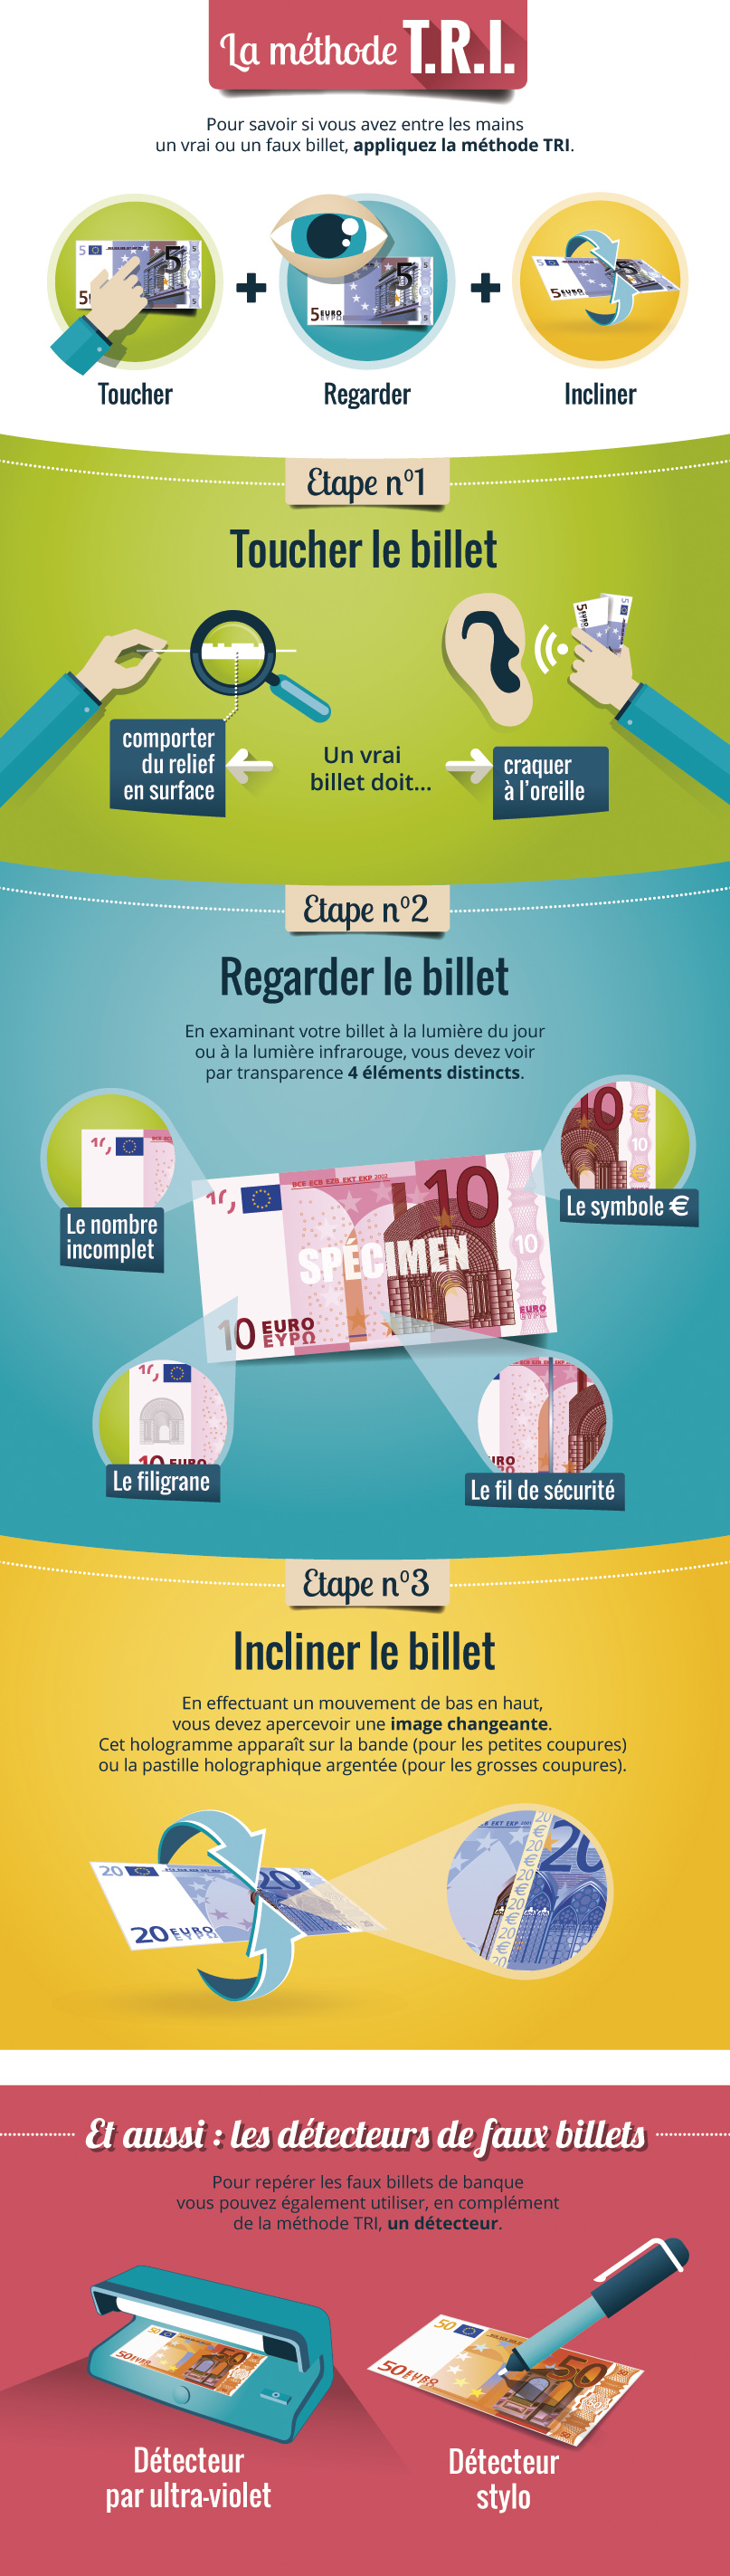 Comment identifier un faux billet de 10 euros ?